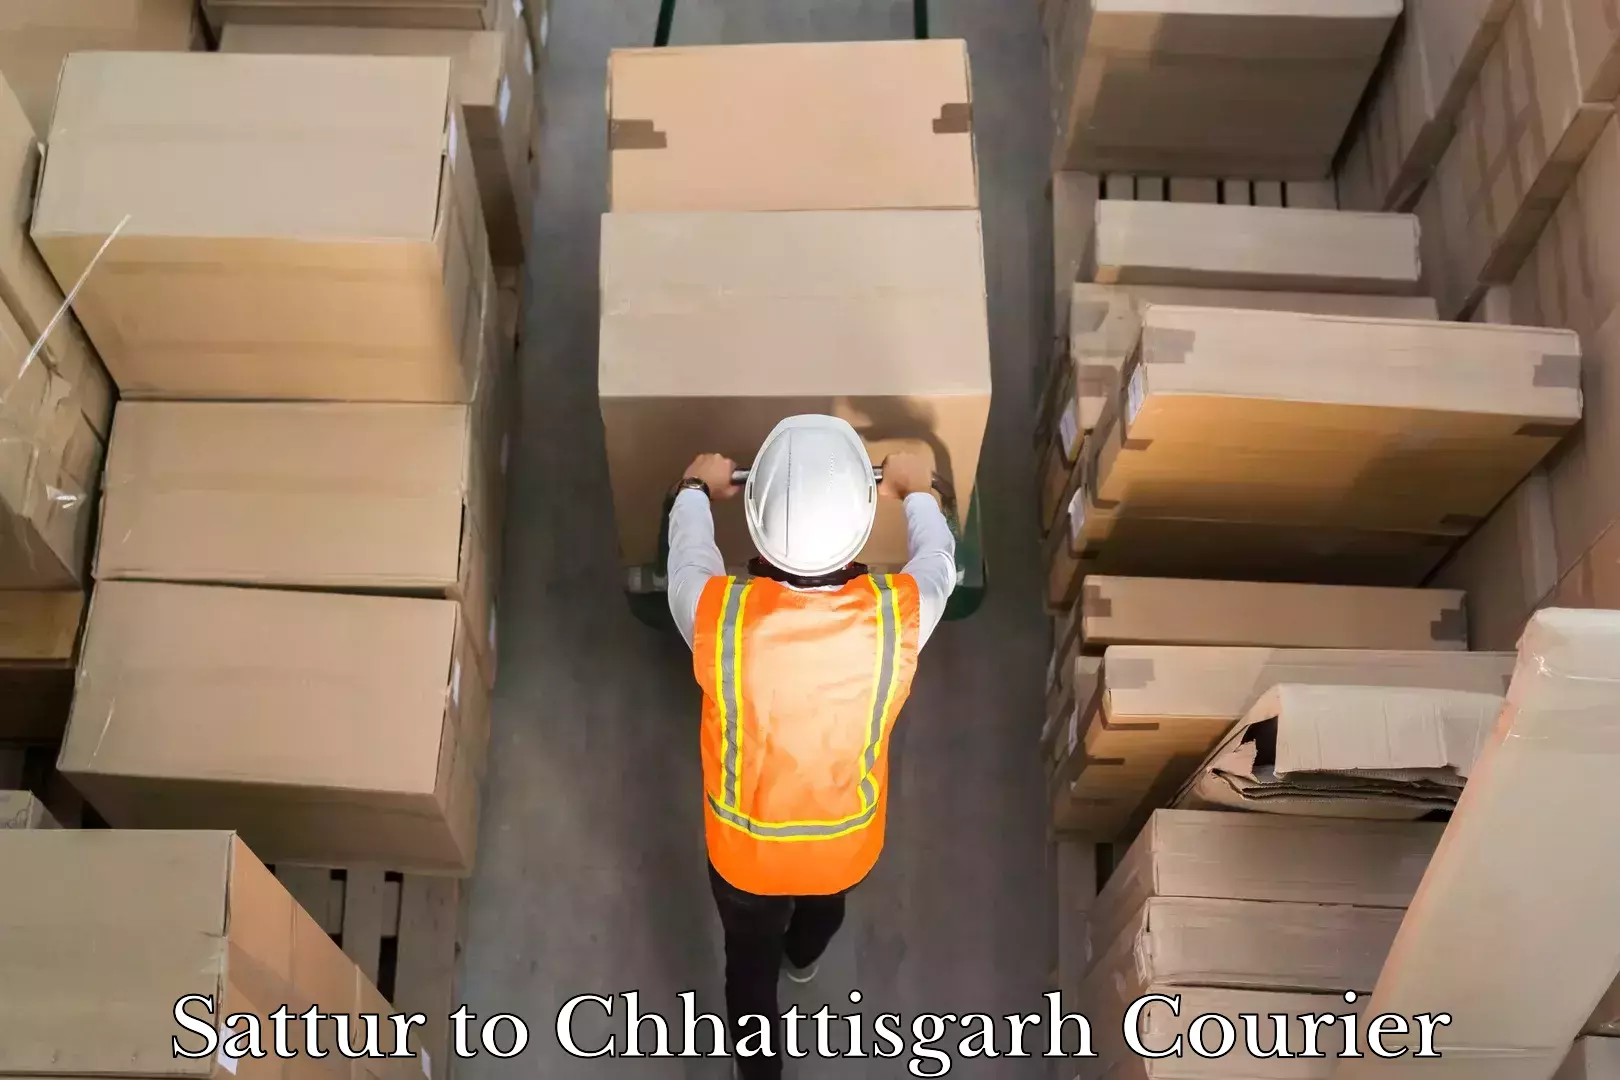 High-speed parcel service Sattur to Chhattisgarh